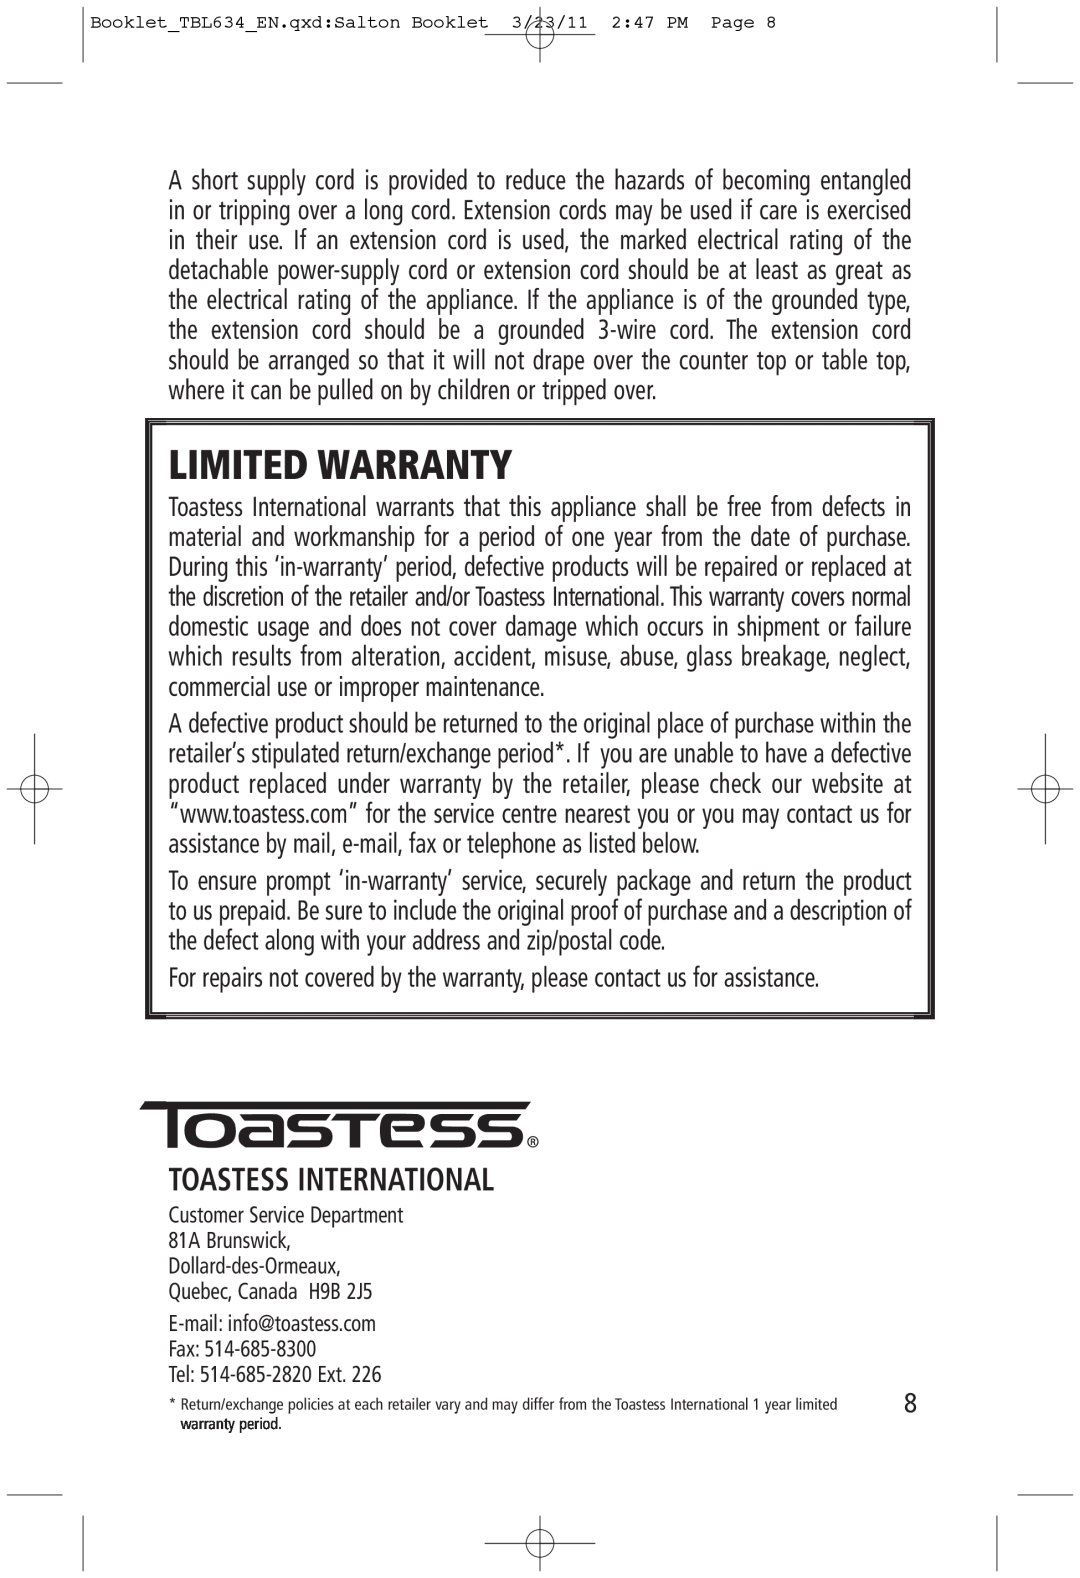 Toastess TBL634 manual Toastess International, Limited Warranty 